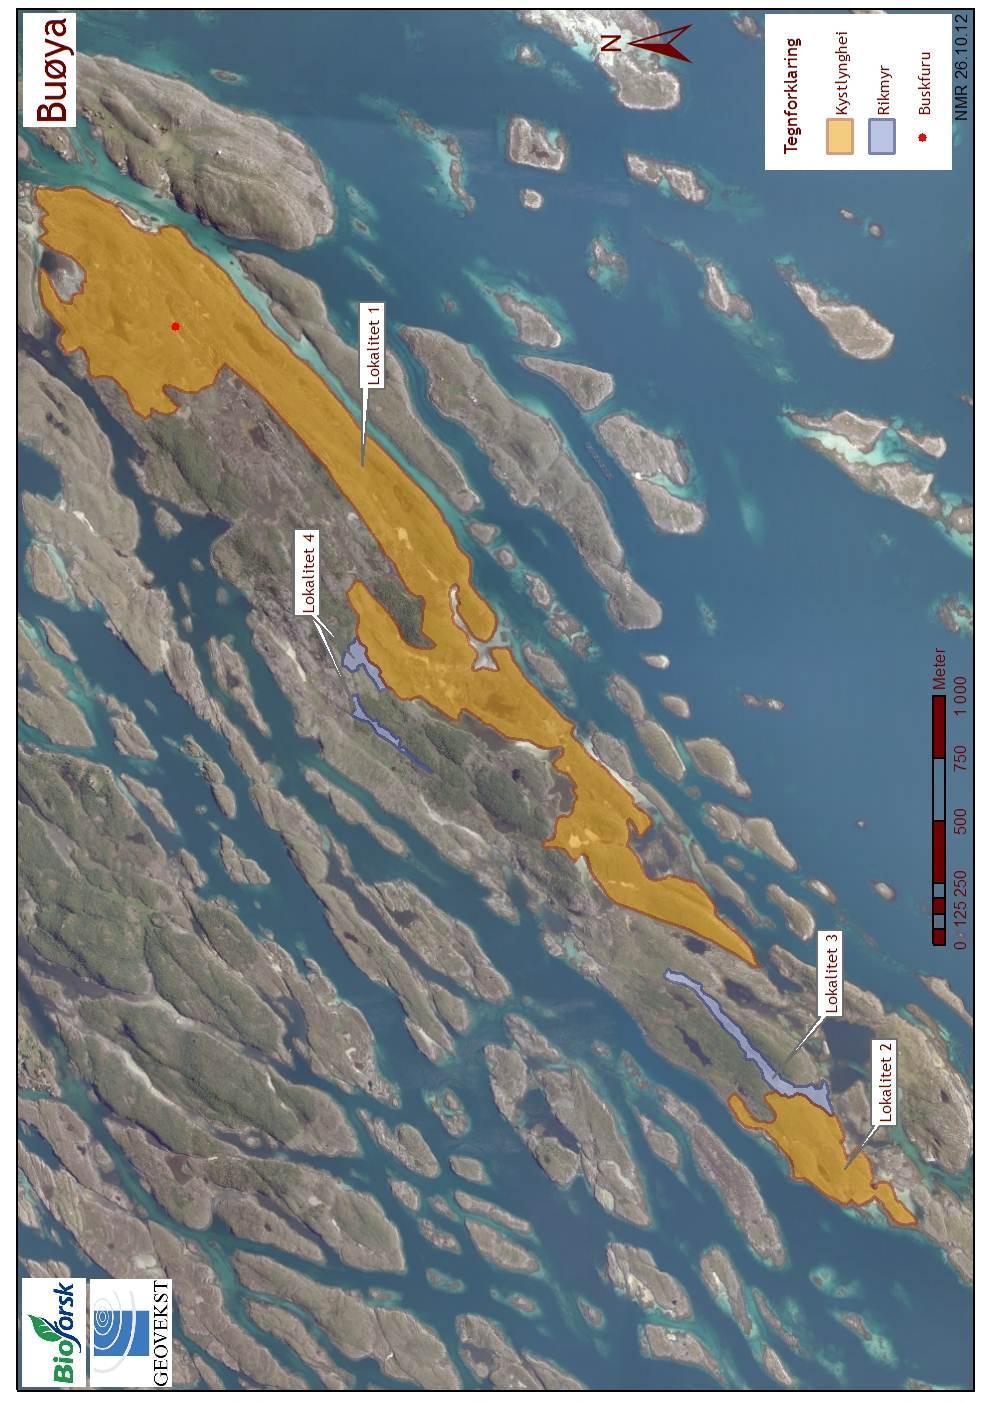 Figur 2. Ortofoto med oversikt over beliggenhet av lokalitetene på Buøya. Lokalitet 1 og 2 er kystlynghei, og lokalitet 3 og 4 er rikmyr.